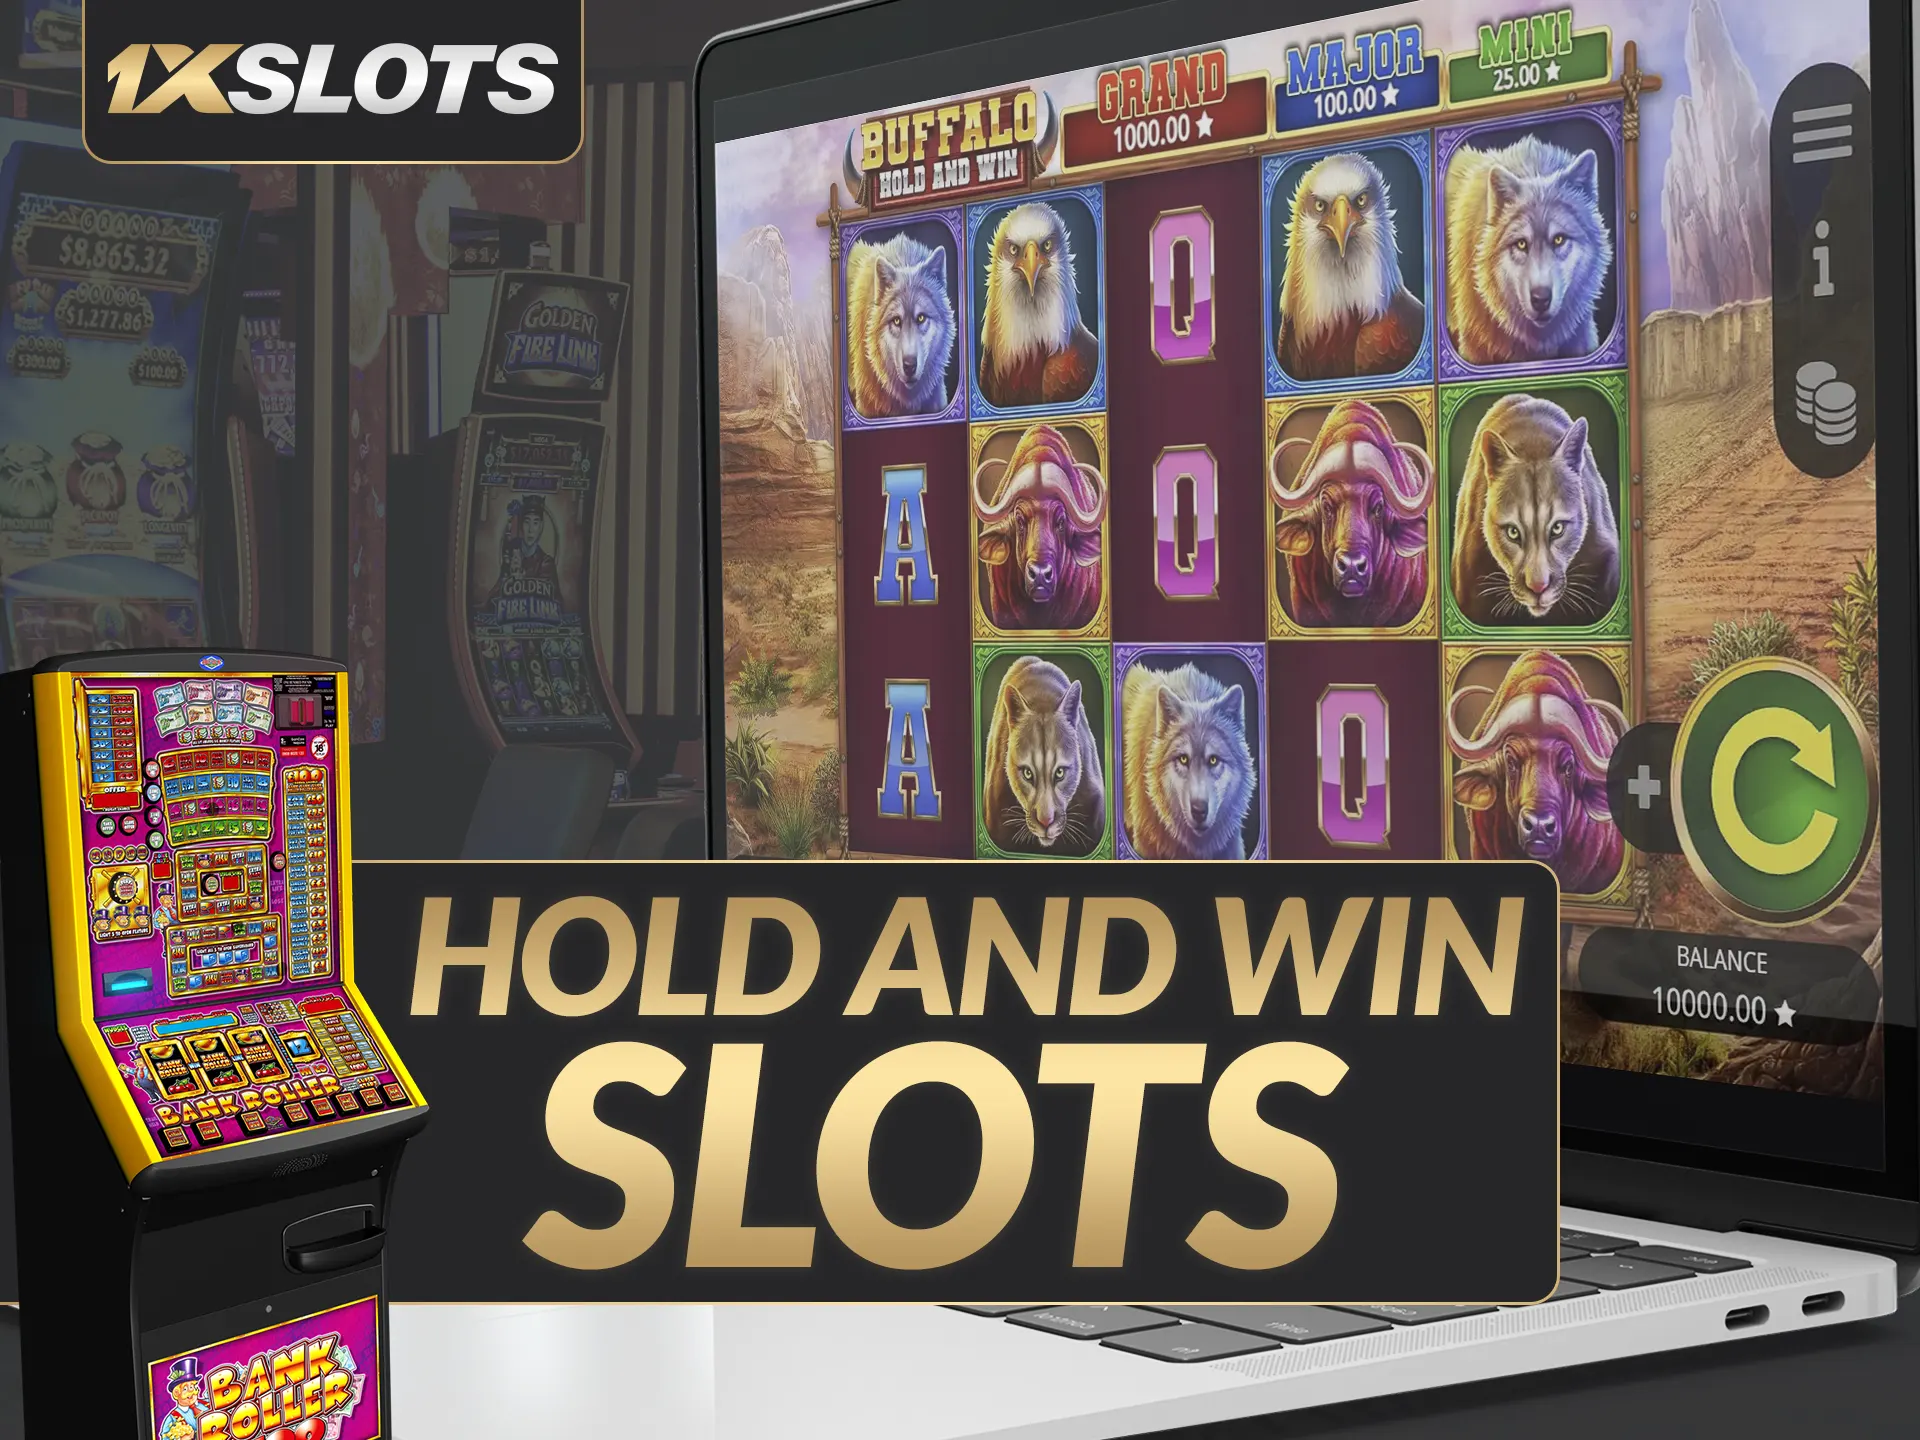 1xSlots oferece slots Hold and Win para uma experiência emocionante.